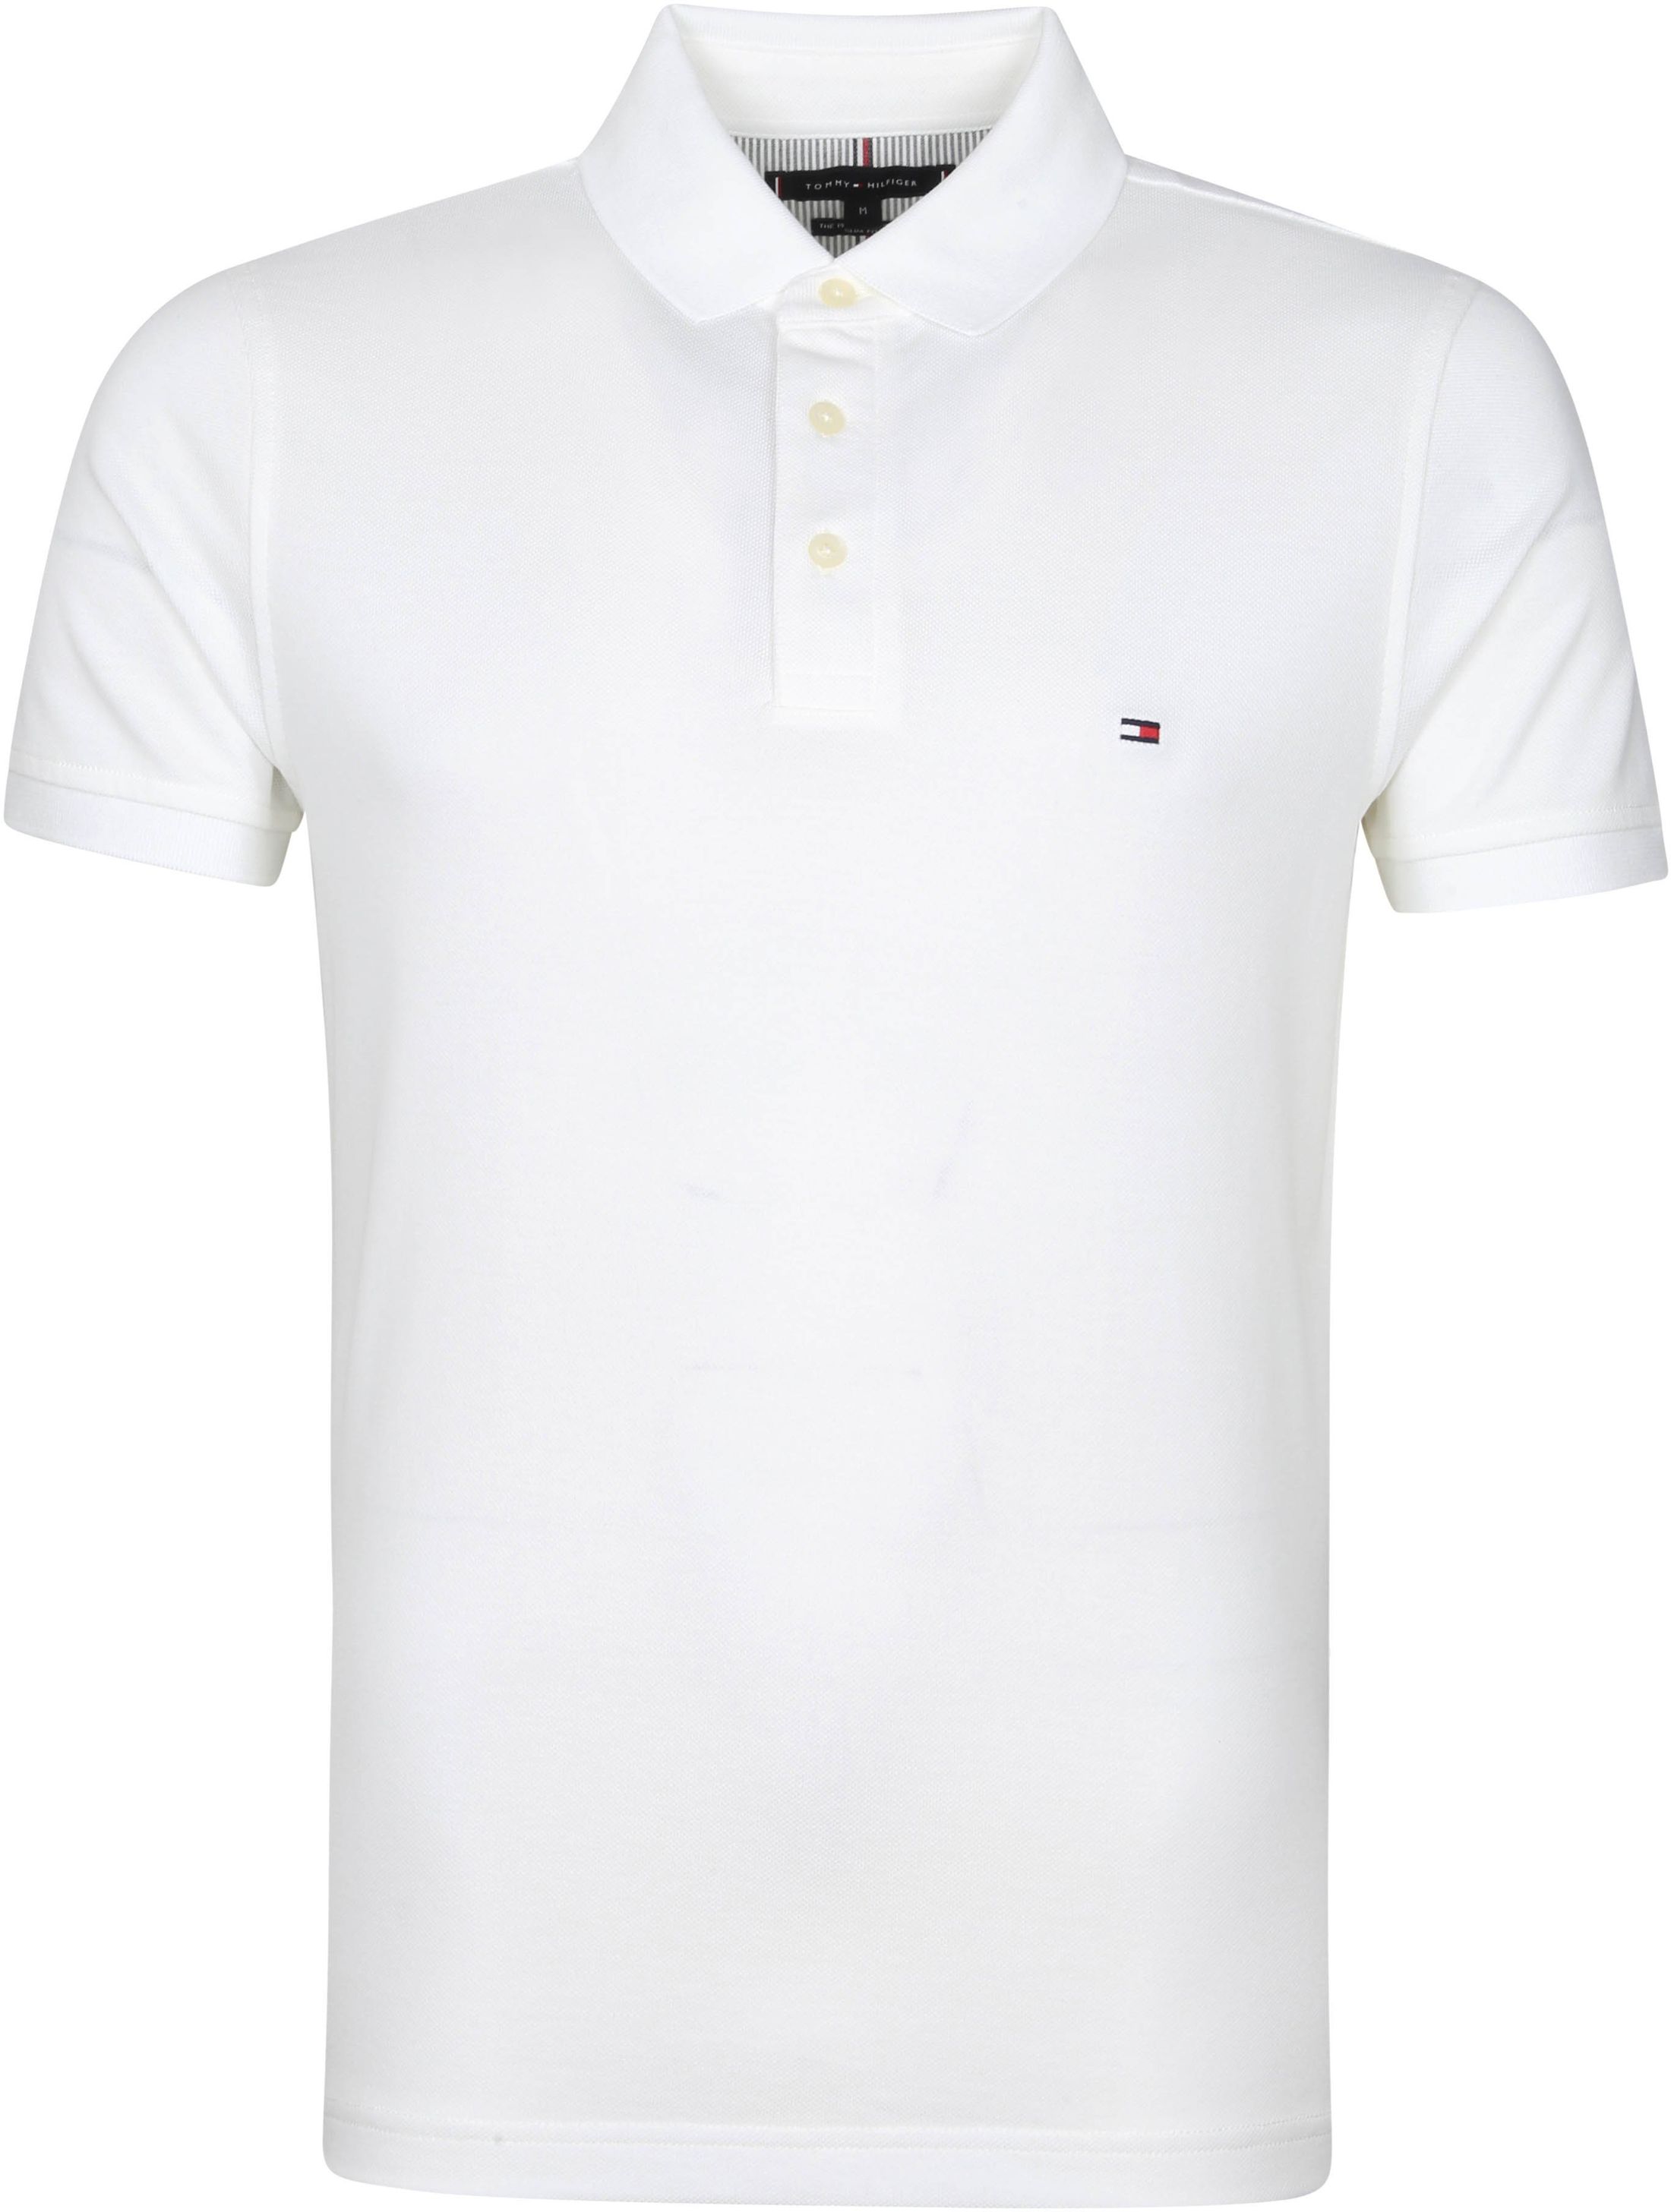 Tommy Hilfiger 1985 Polo Shirt White size L